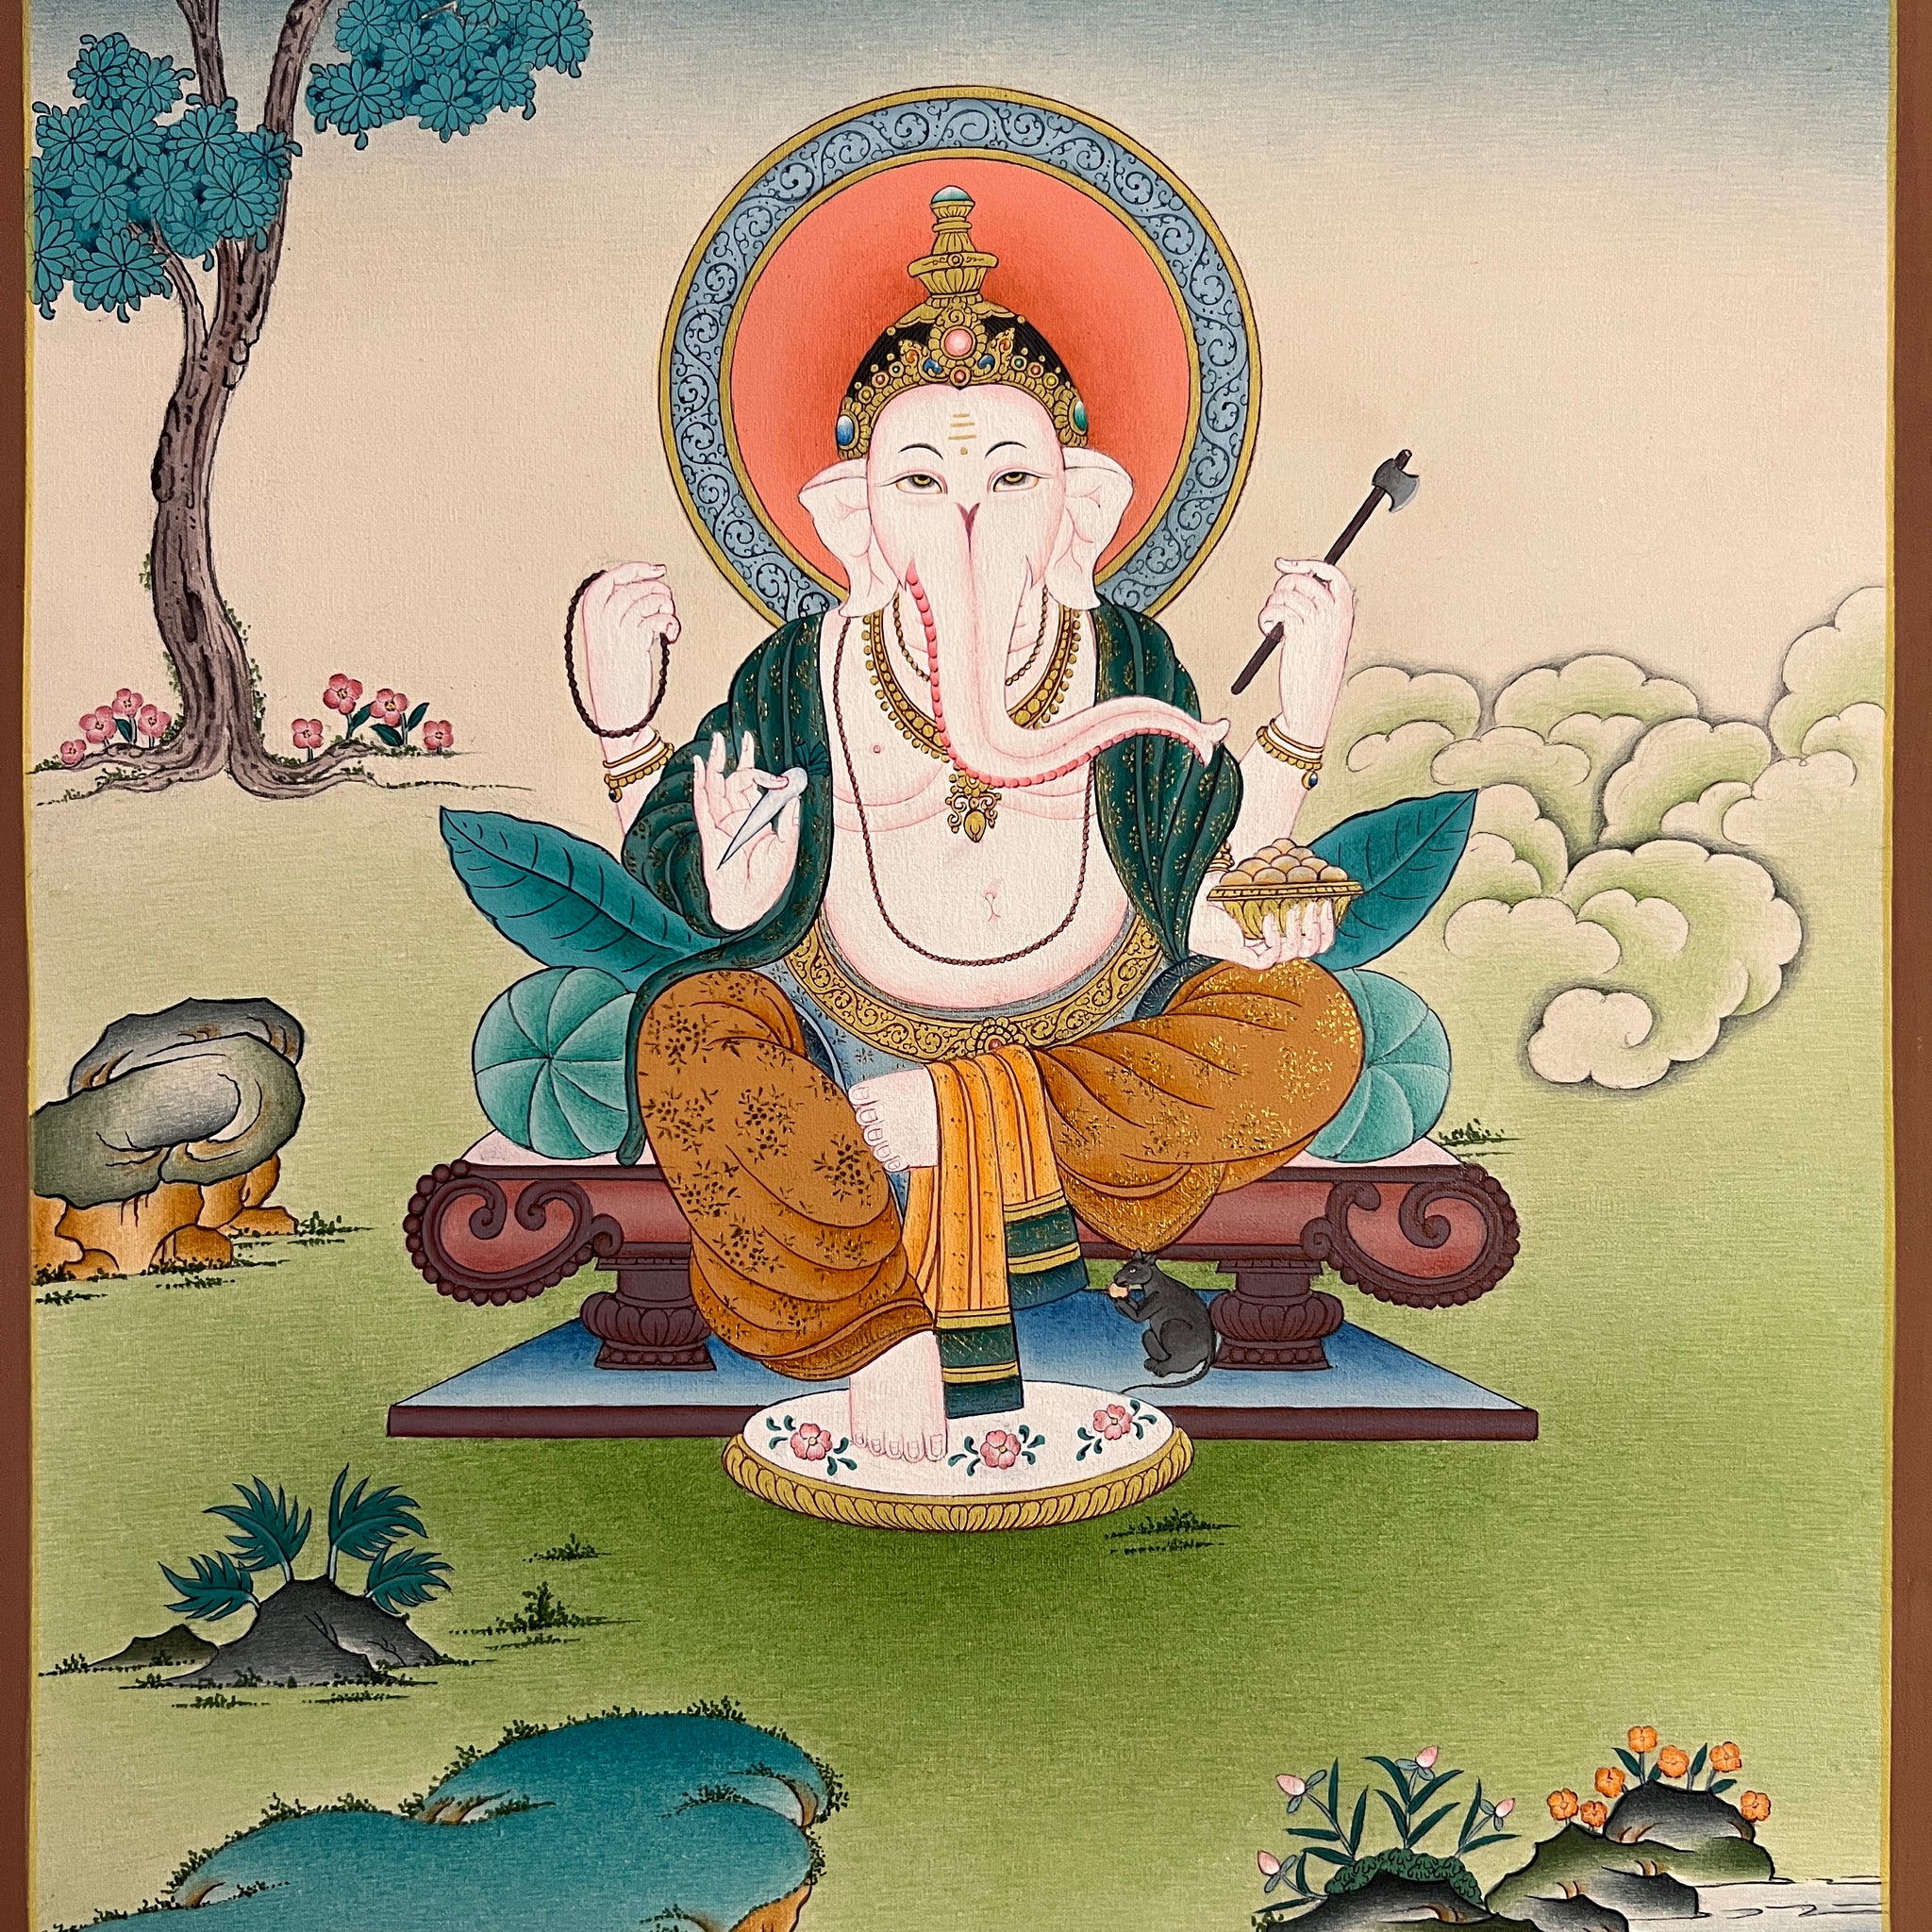 Ganesh aka Ganesha